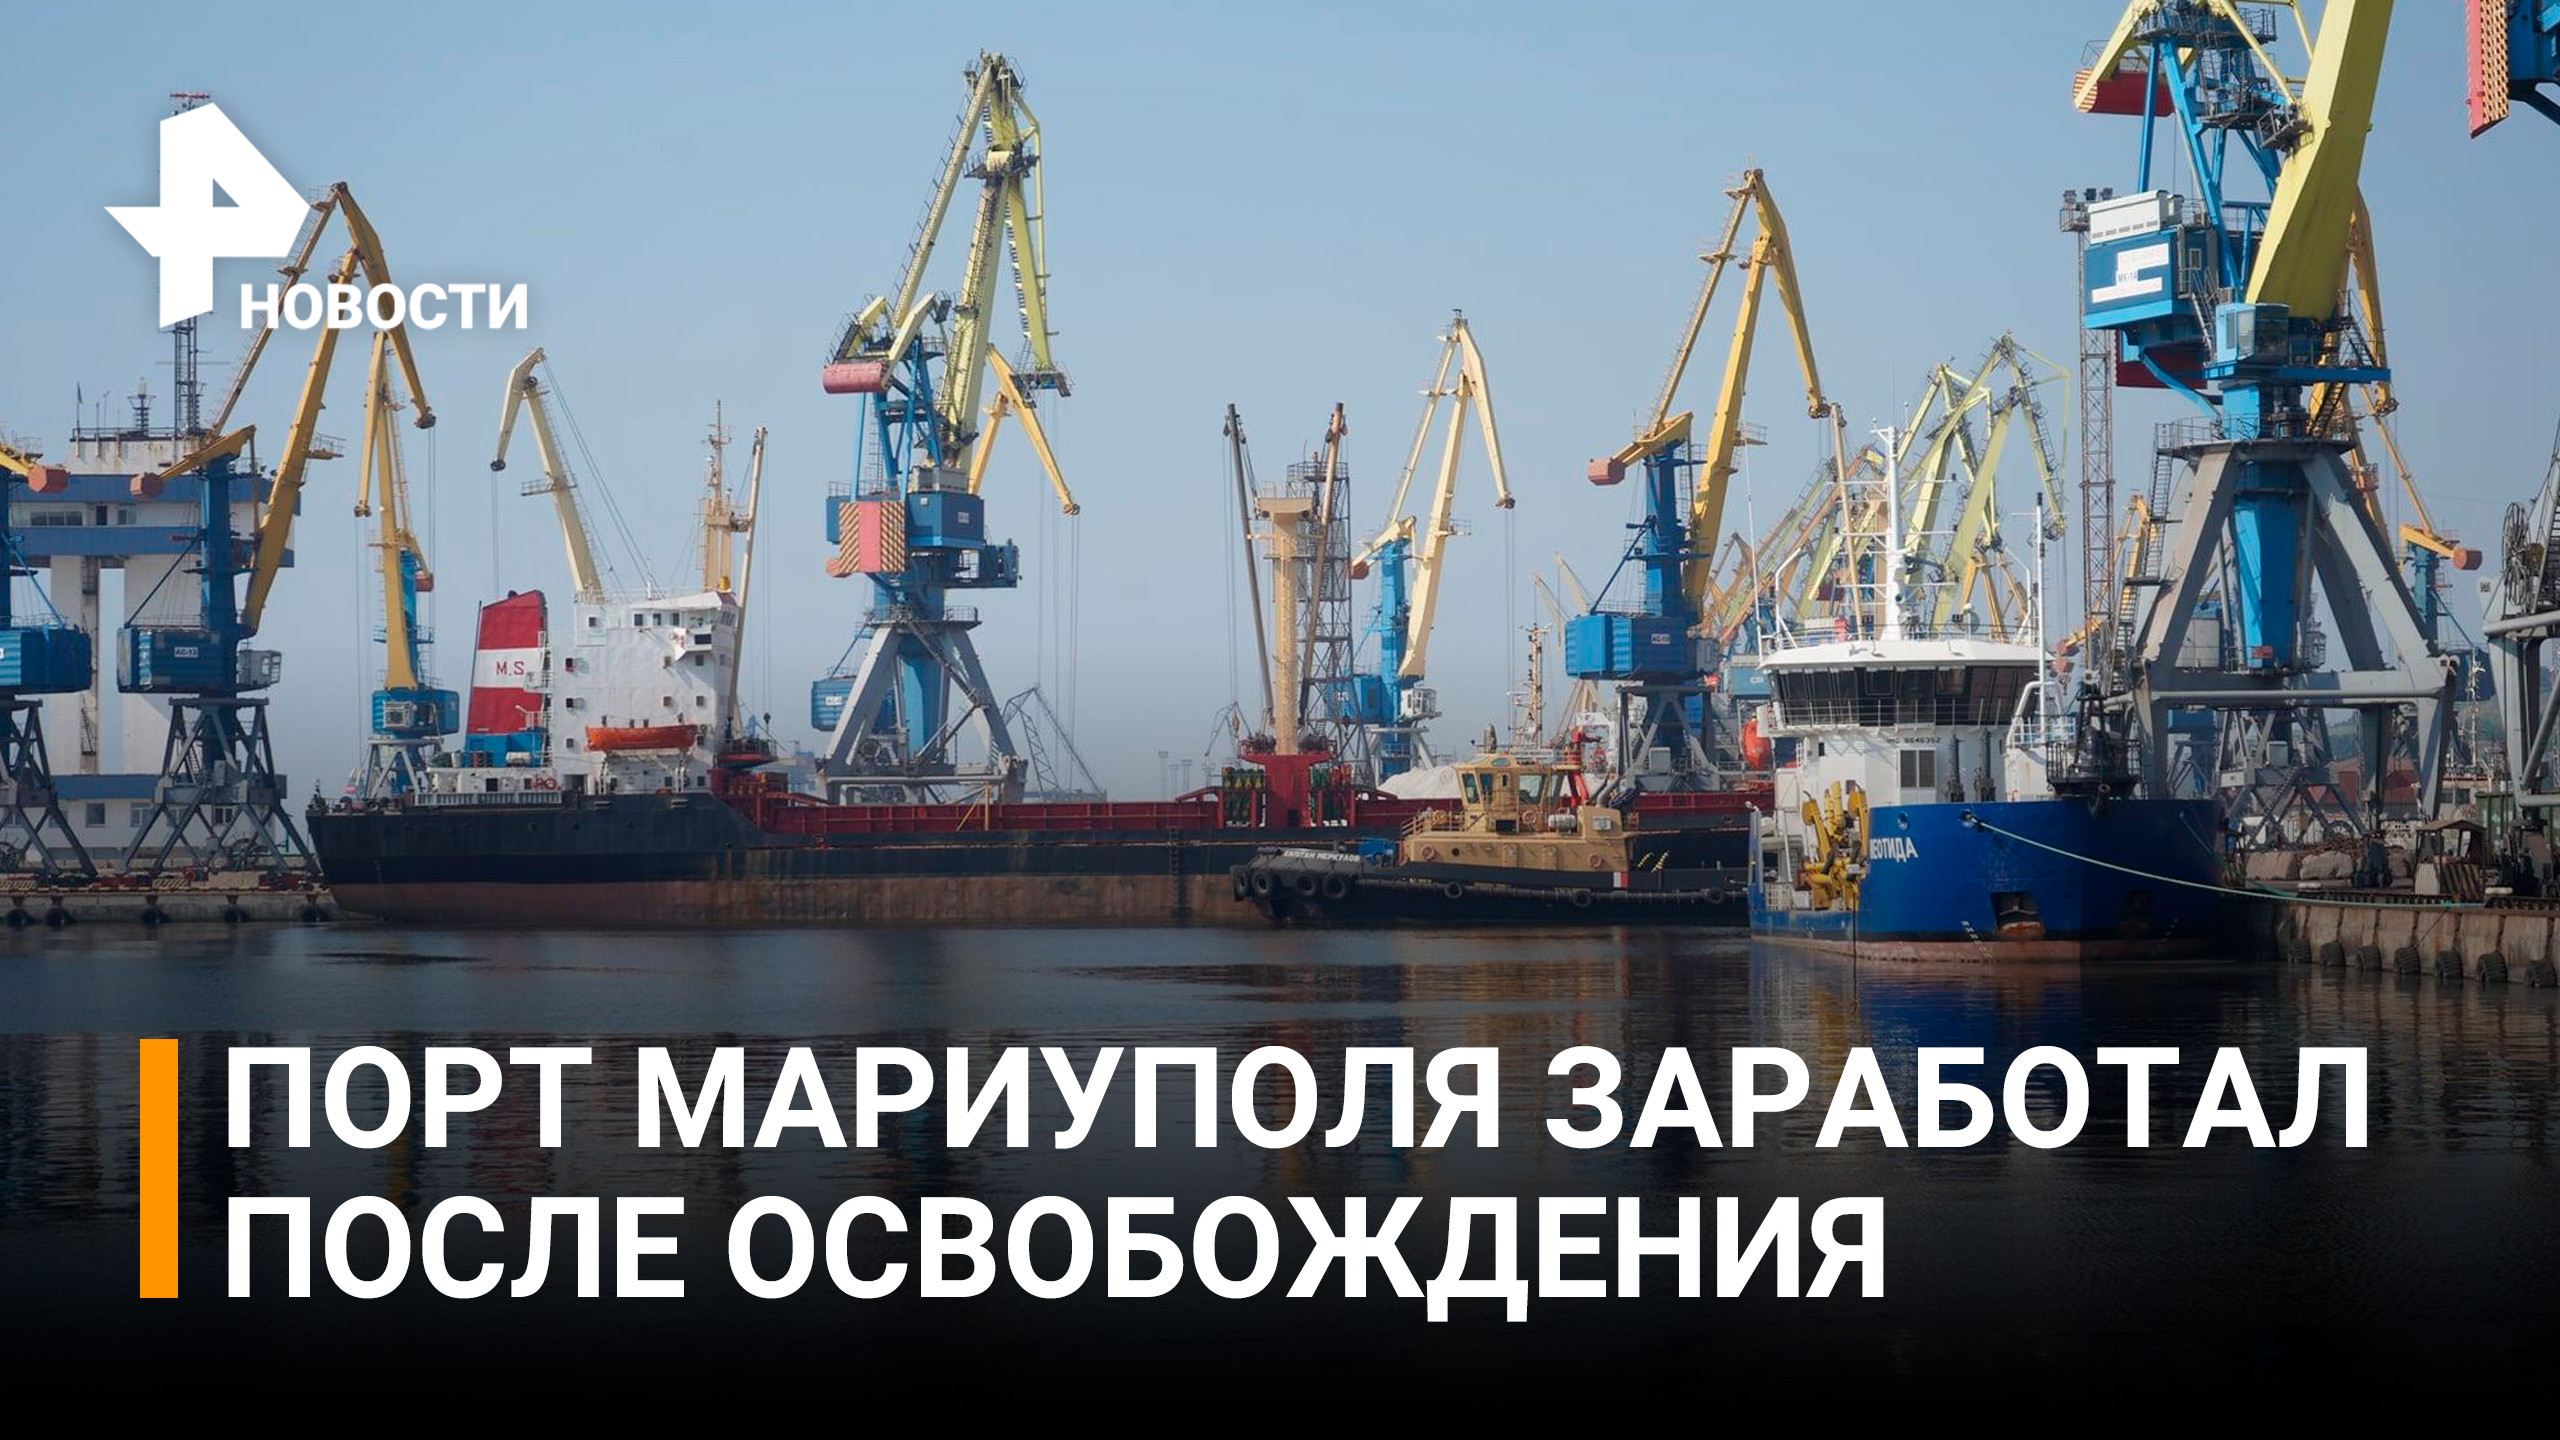 Порт Мариуполя заработал в обычном режиме / РЕН Новости